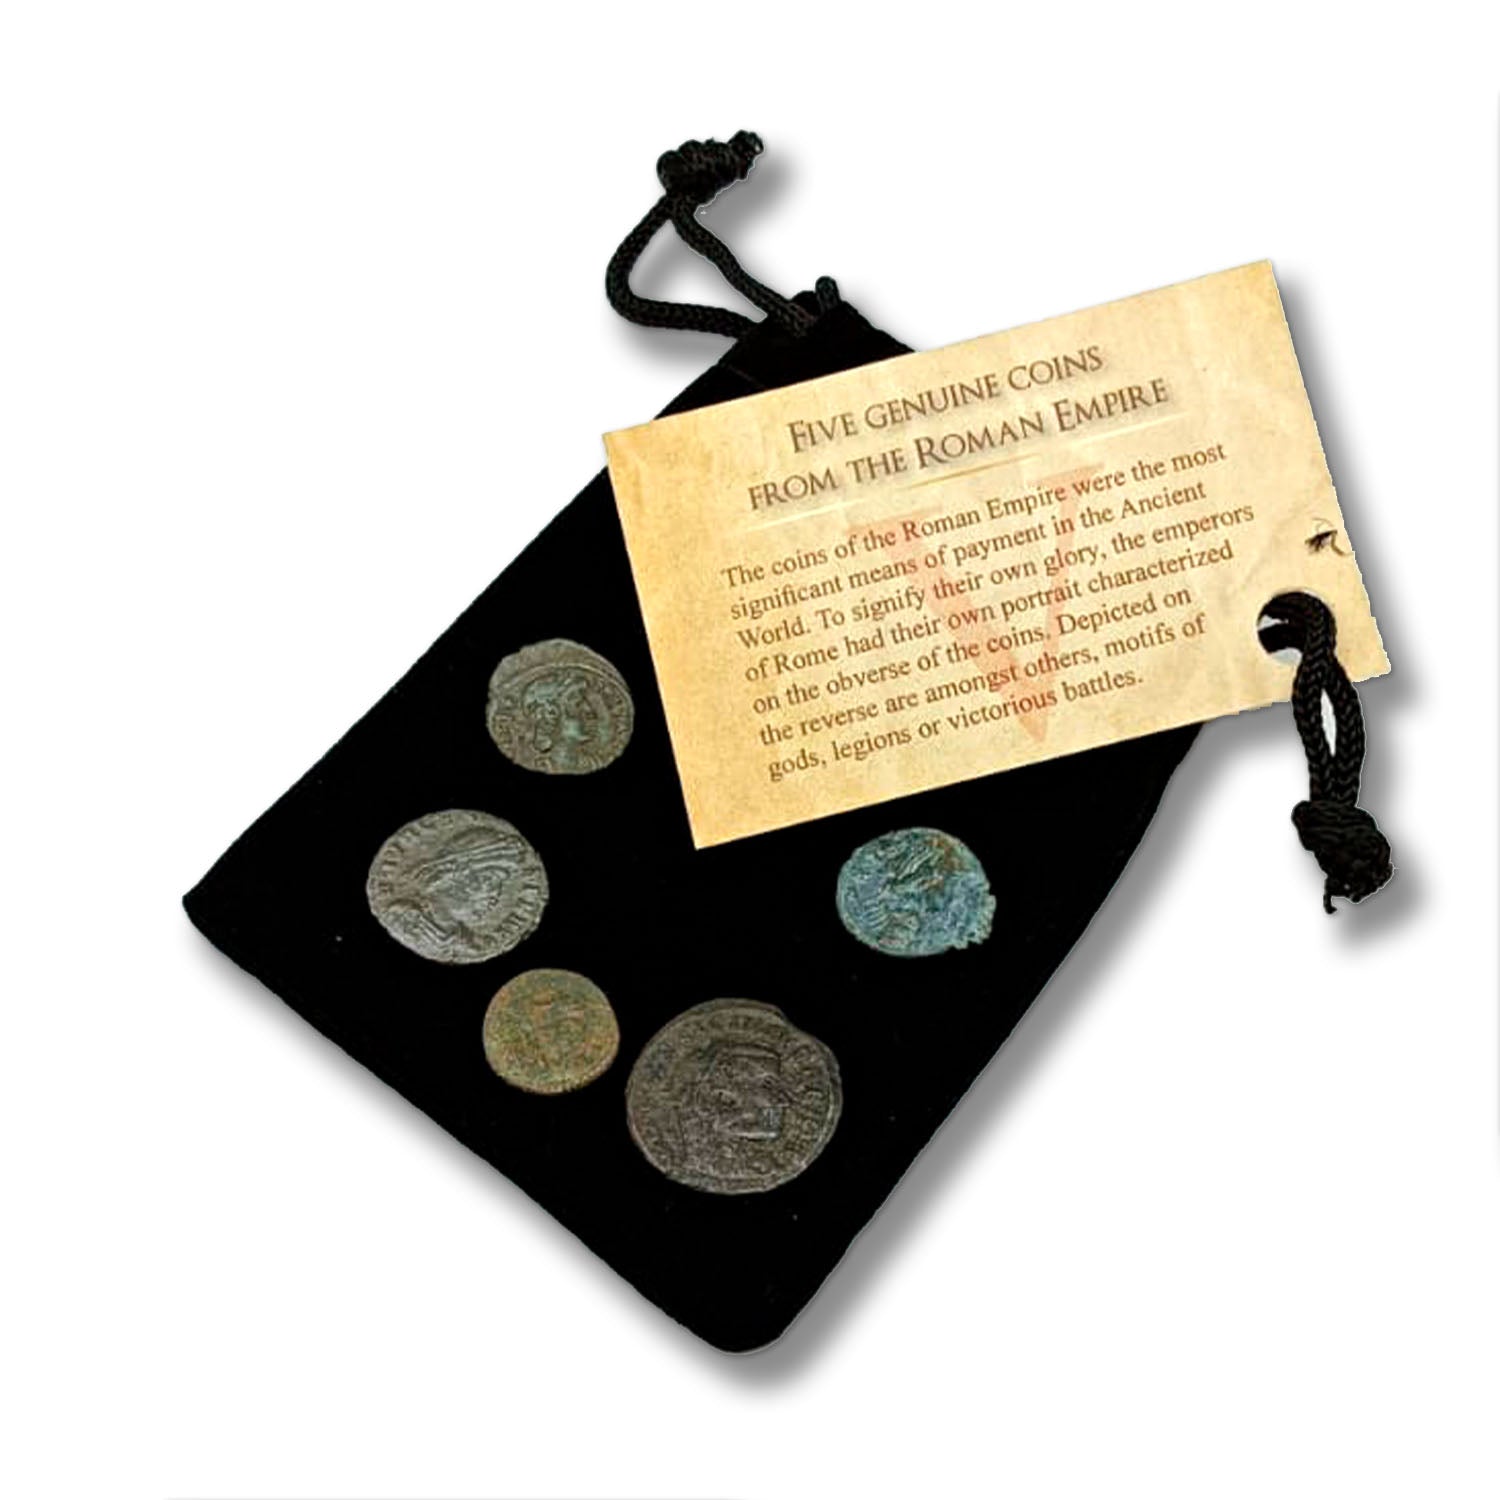  IMPACTO COLECCIONABLES Coin Collection - World